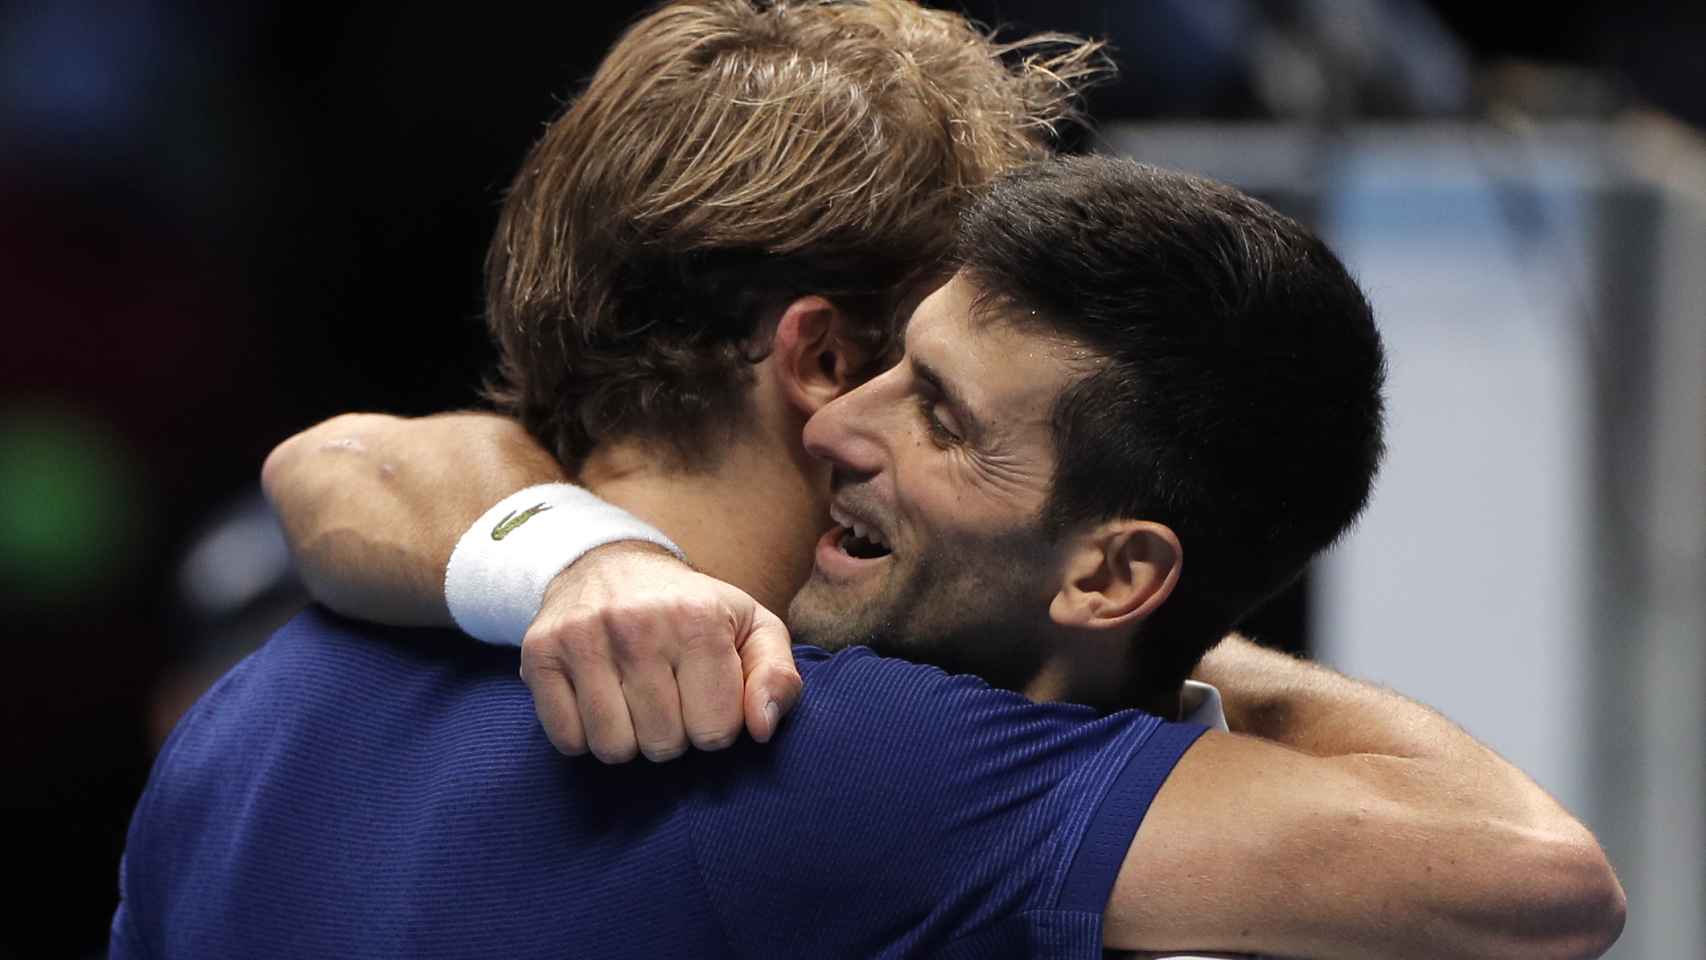 Abrazo entre Djokovic y Zverev durante la semifinal de las ATP Finals 2021